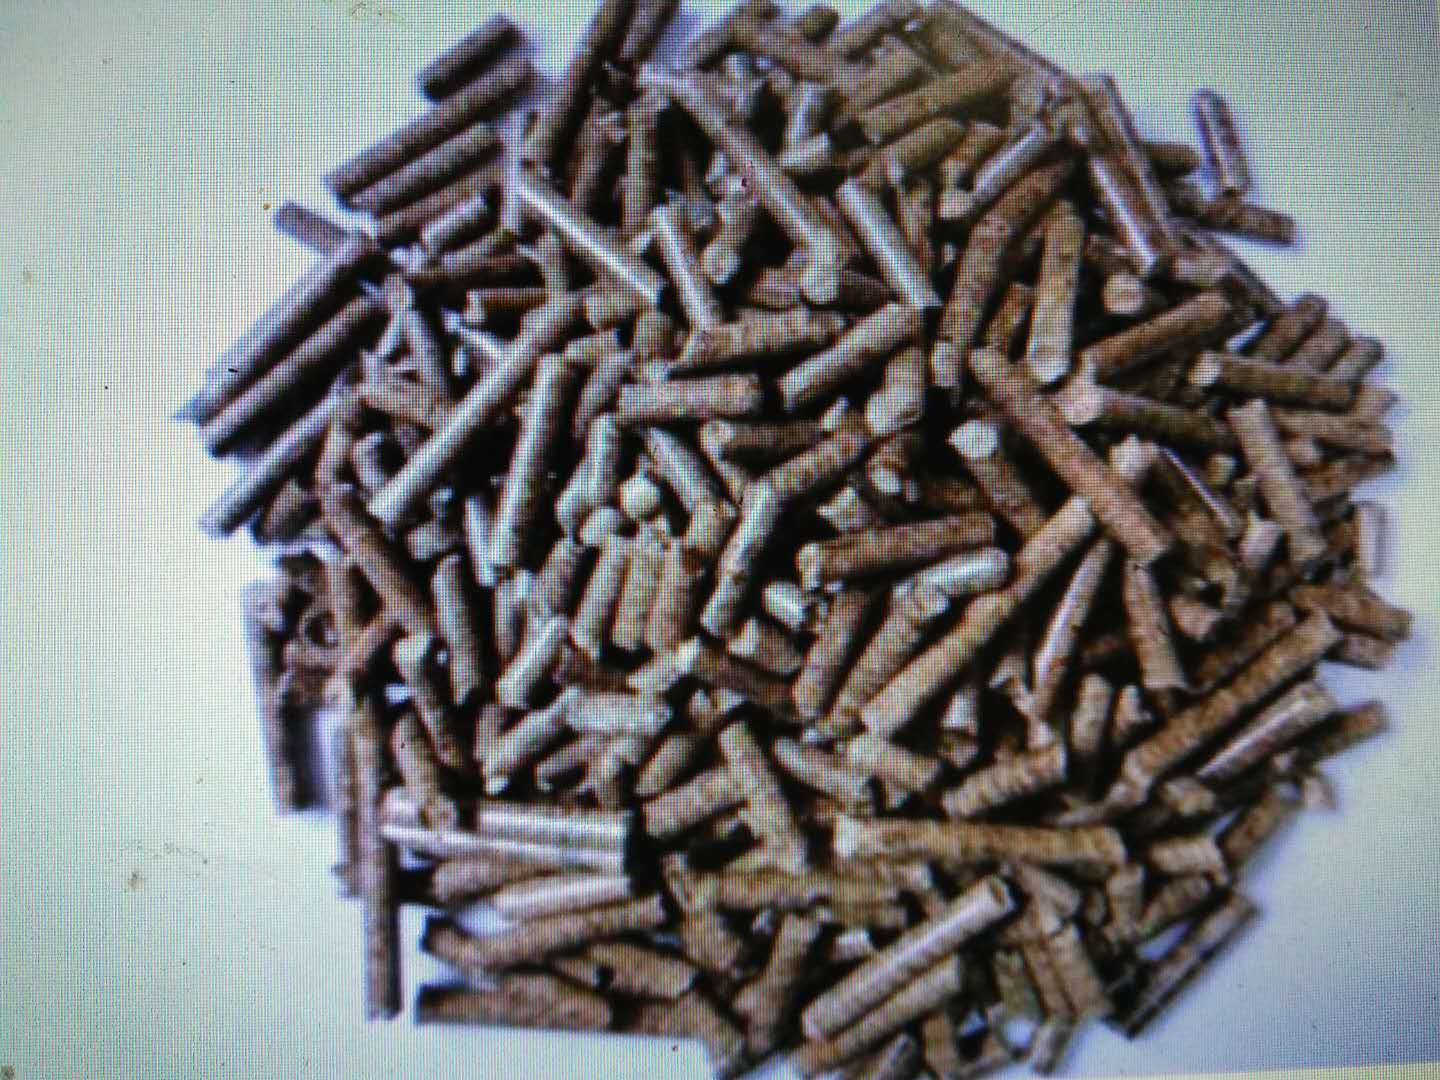 出售生物质颗粒 纯木屑生物质燃烧颗粒 环保生物质木屑颗粒燃料